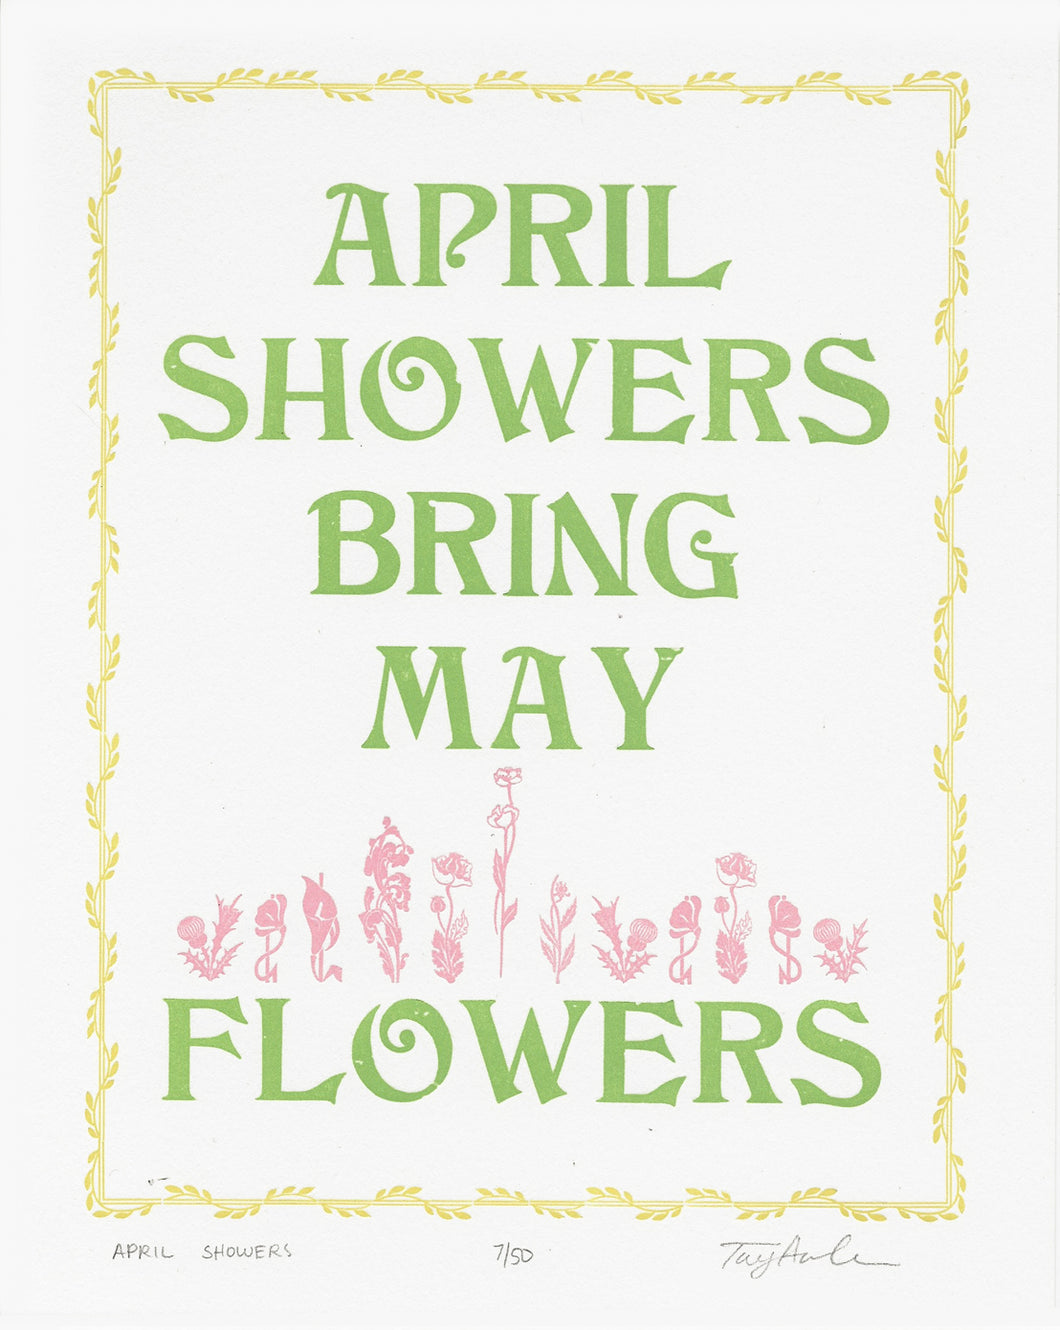 April Showers